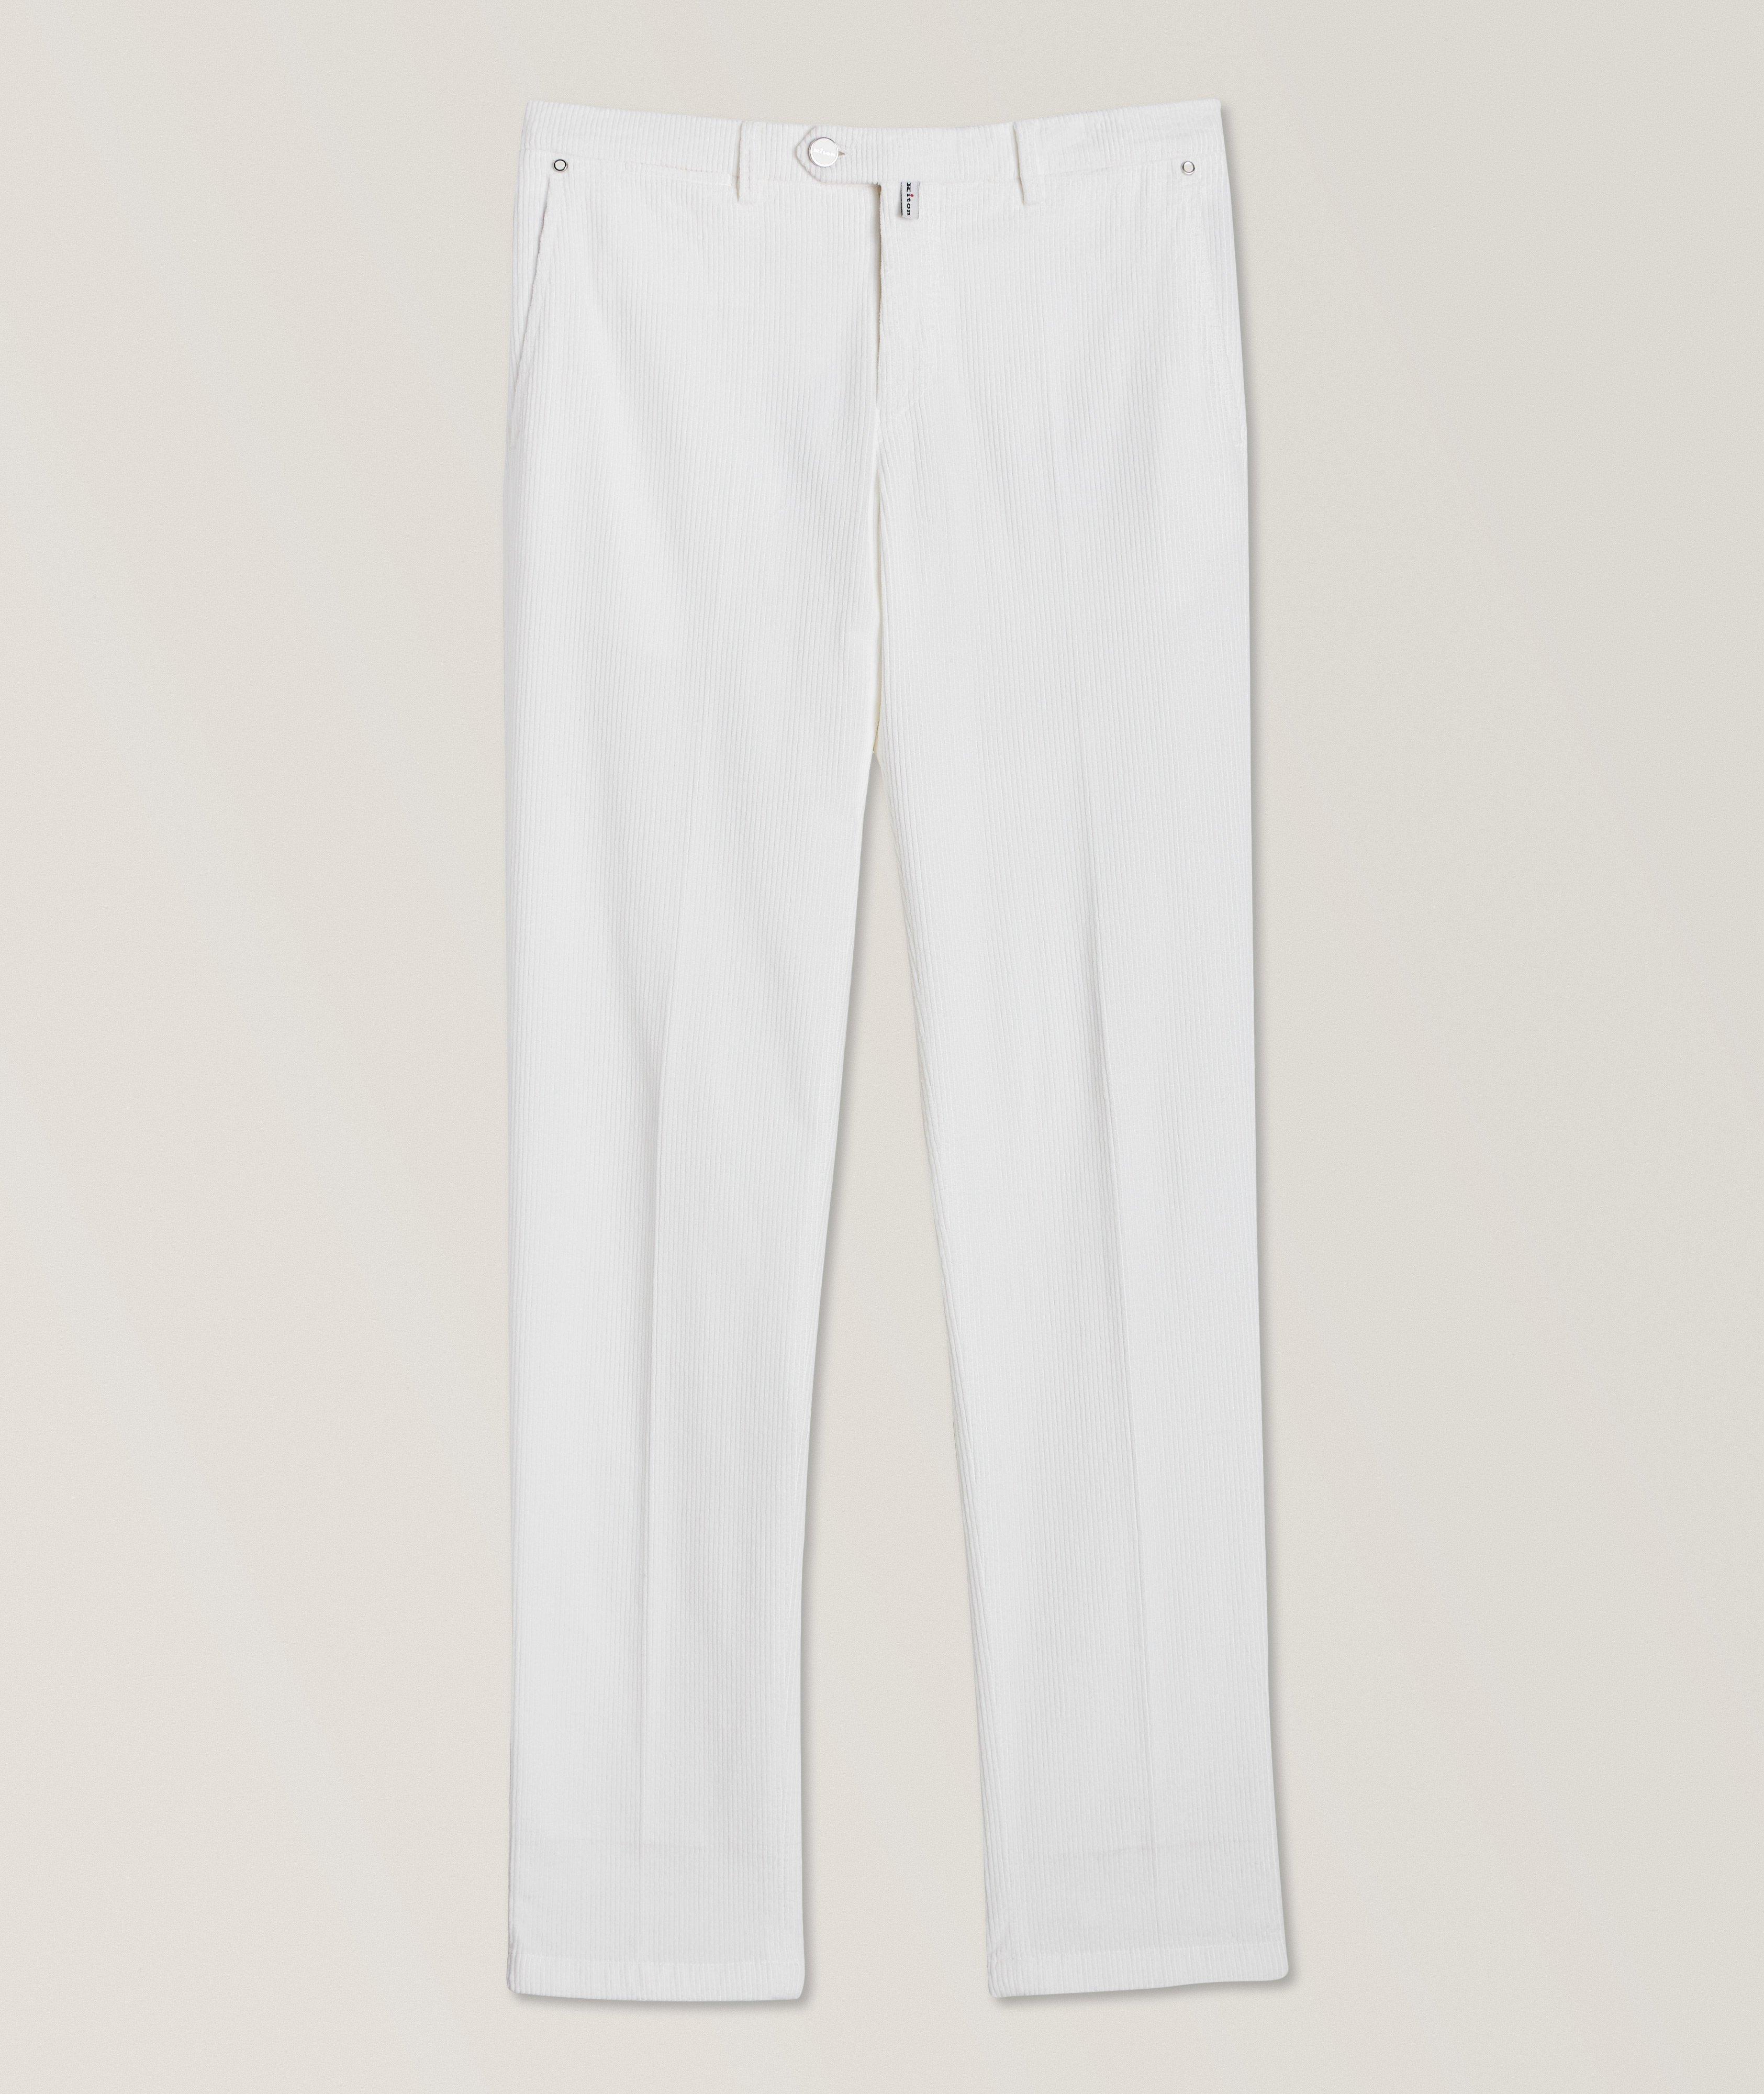 Corduroy Cotton-Blend Jeans  image 0